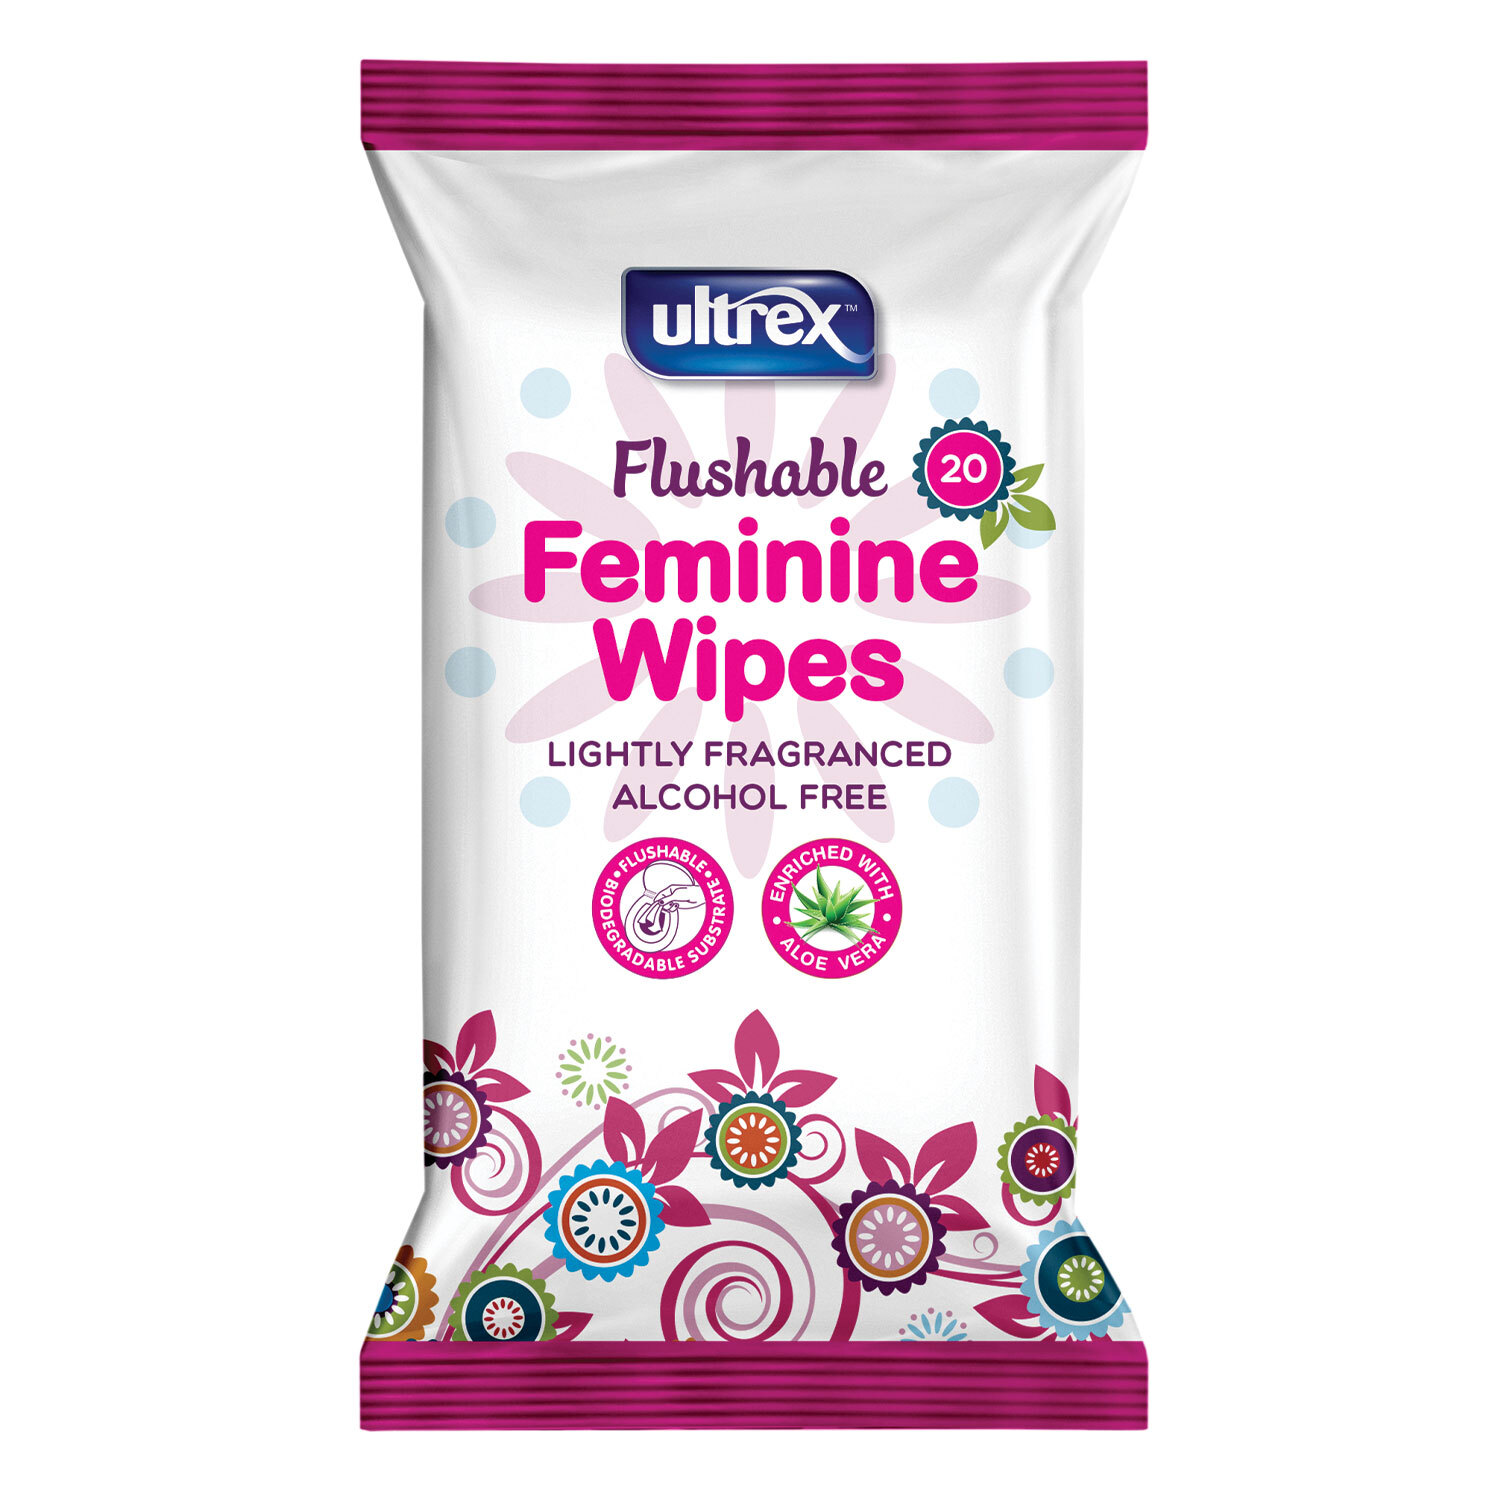 Ultrex Flushable Feminine Wipes Image